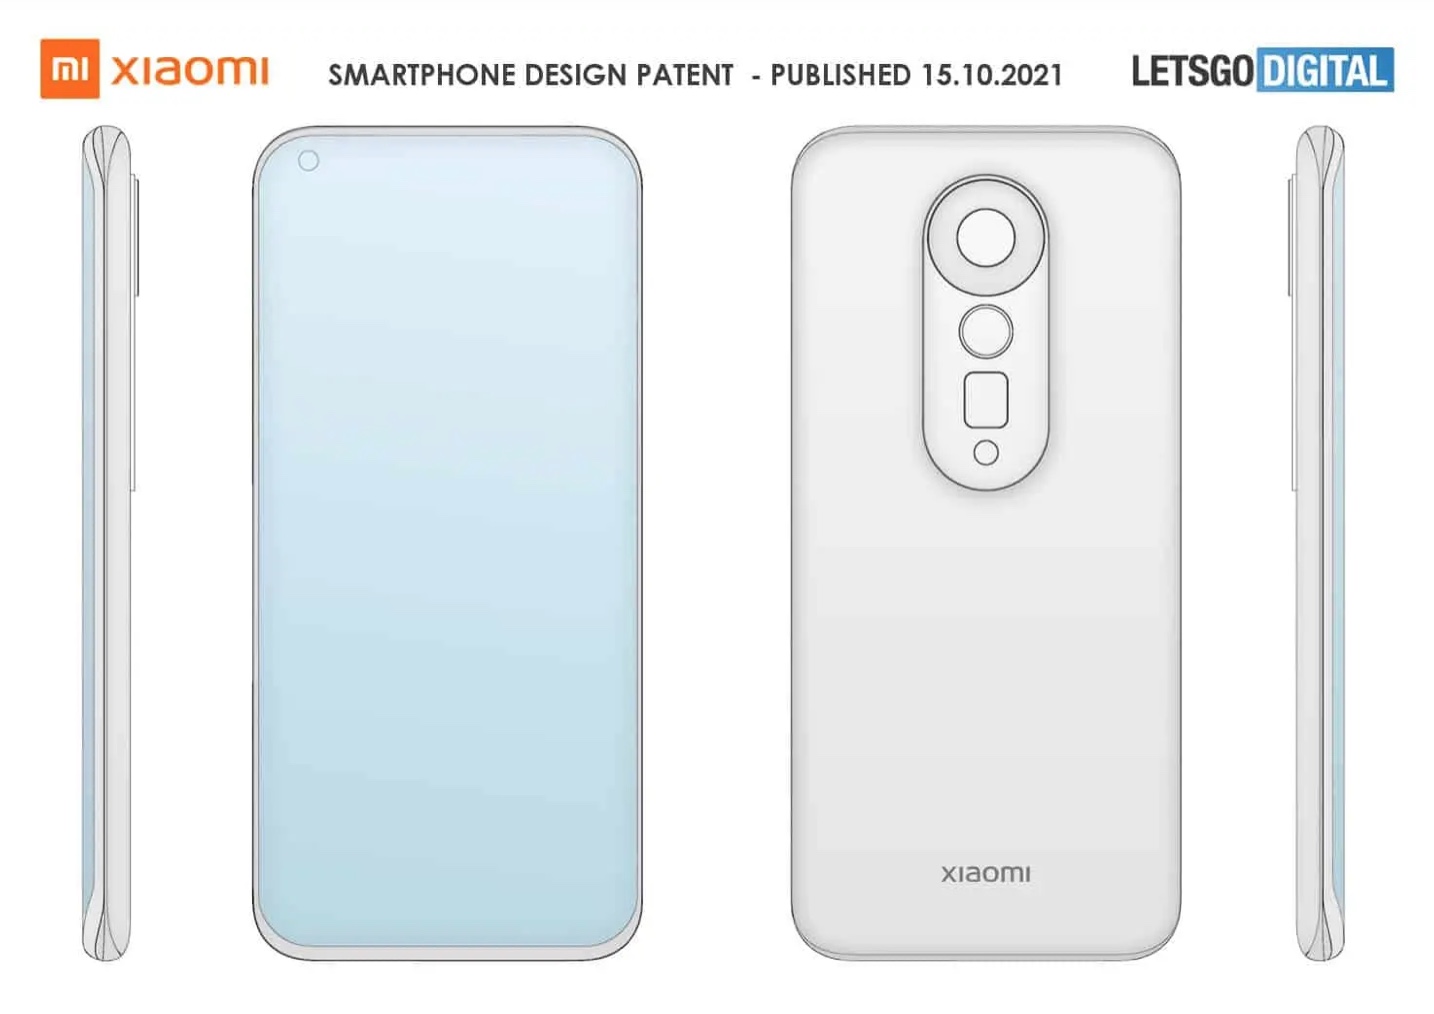 Brevetto design smartphone Xiaomi